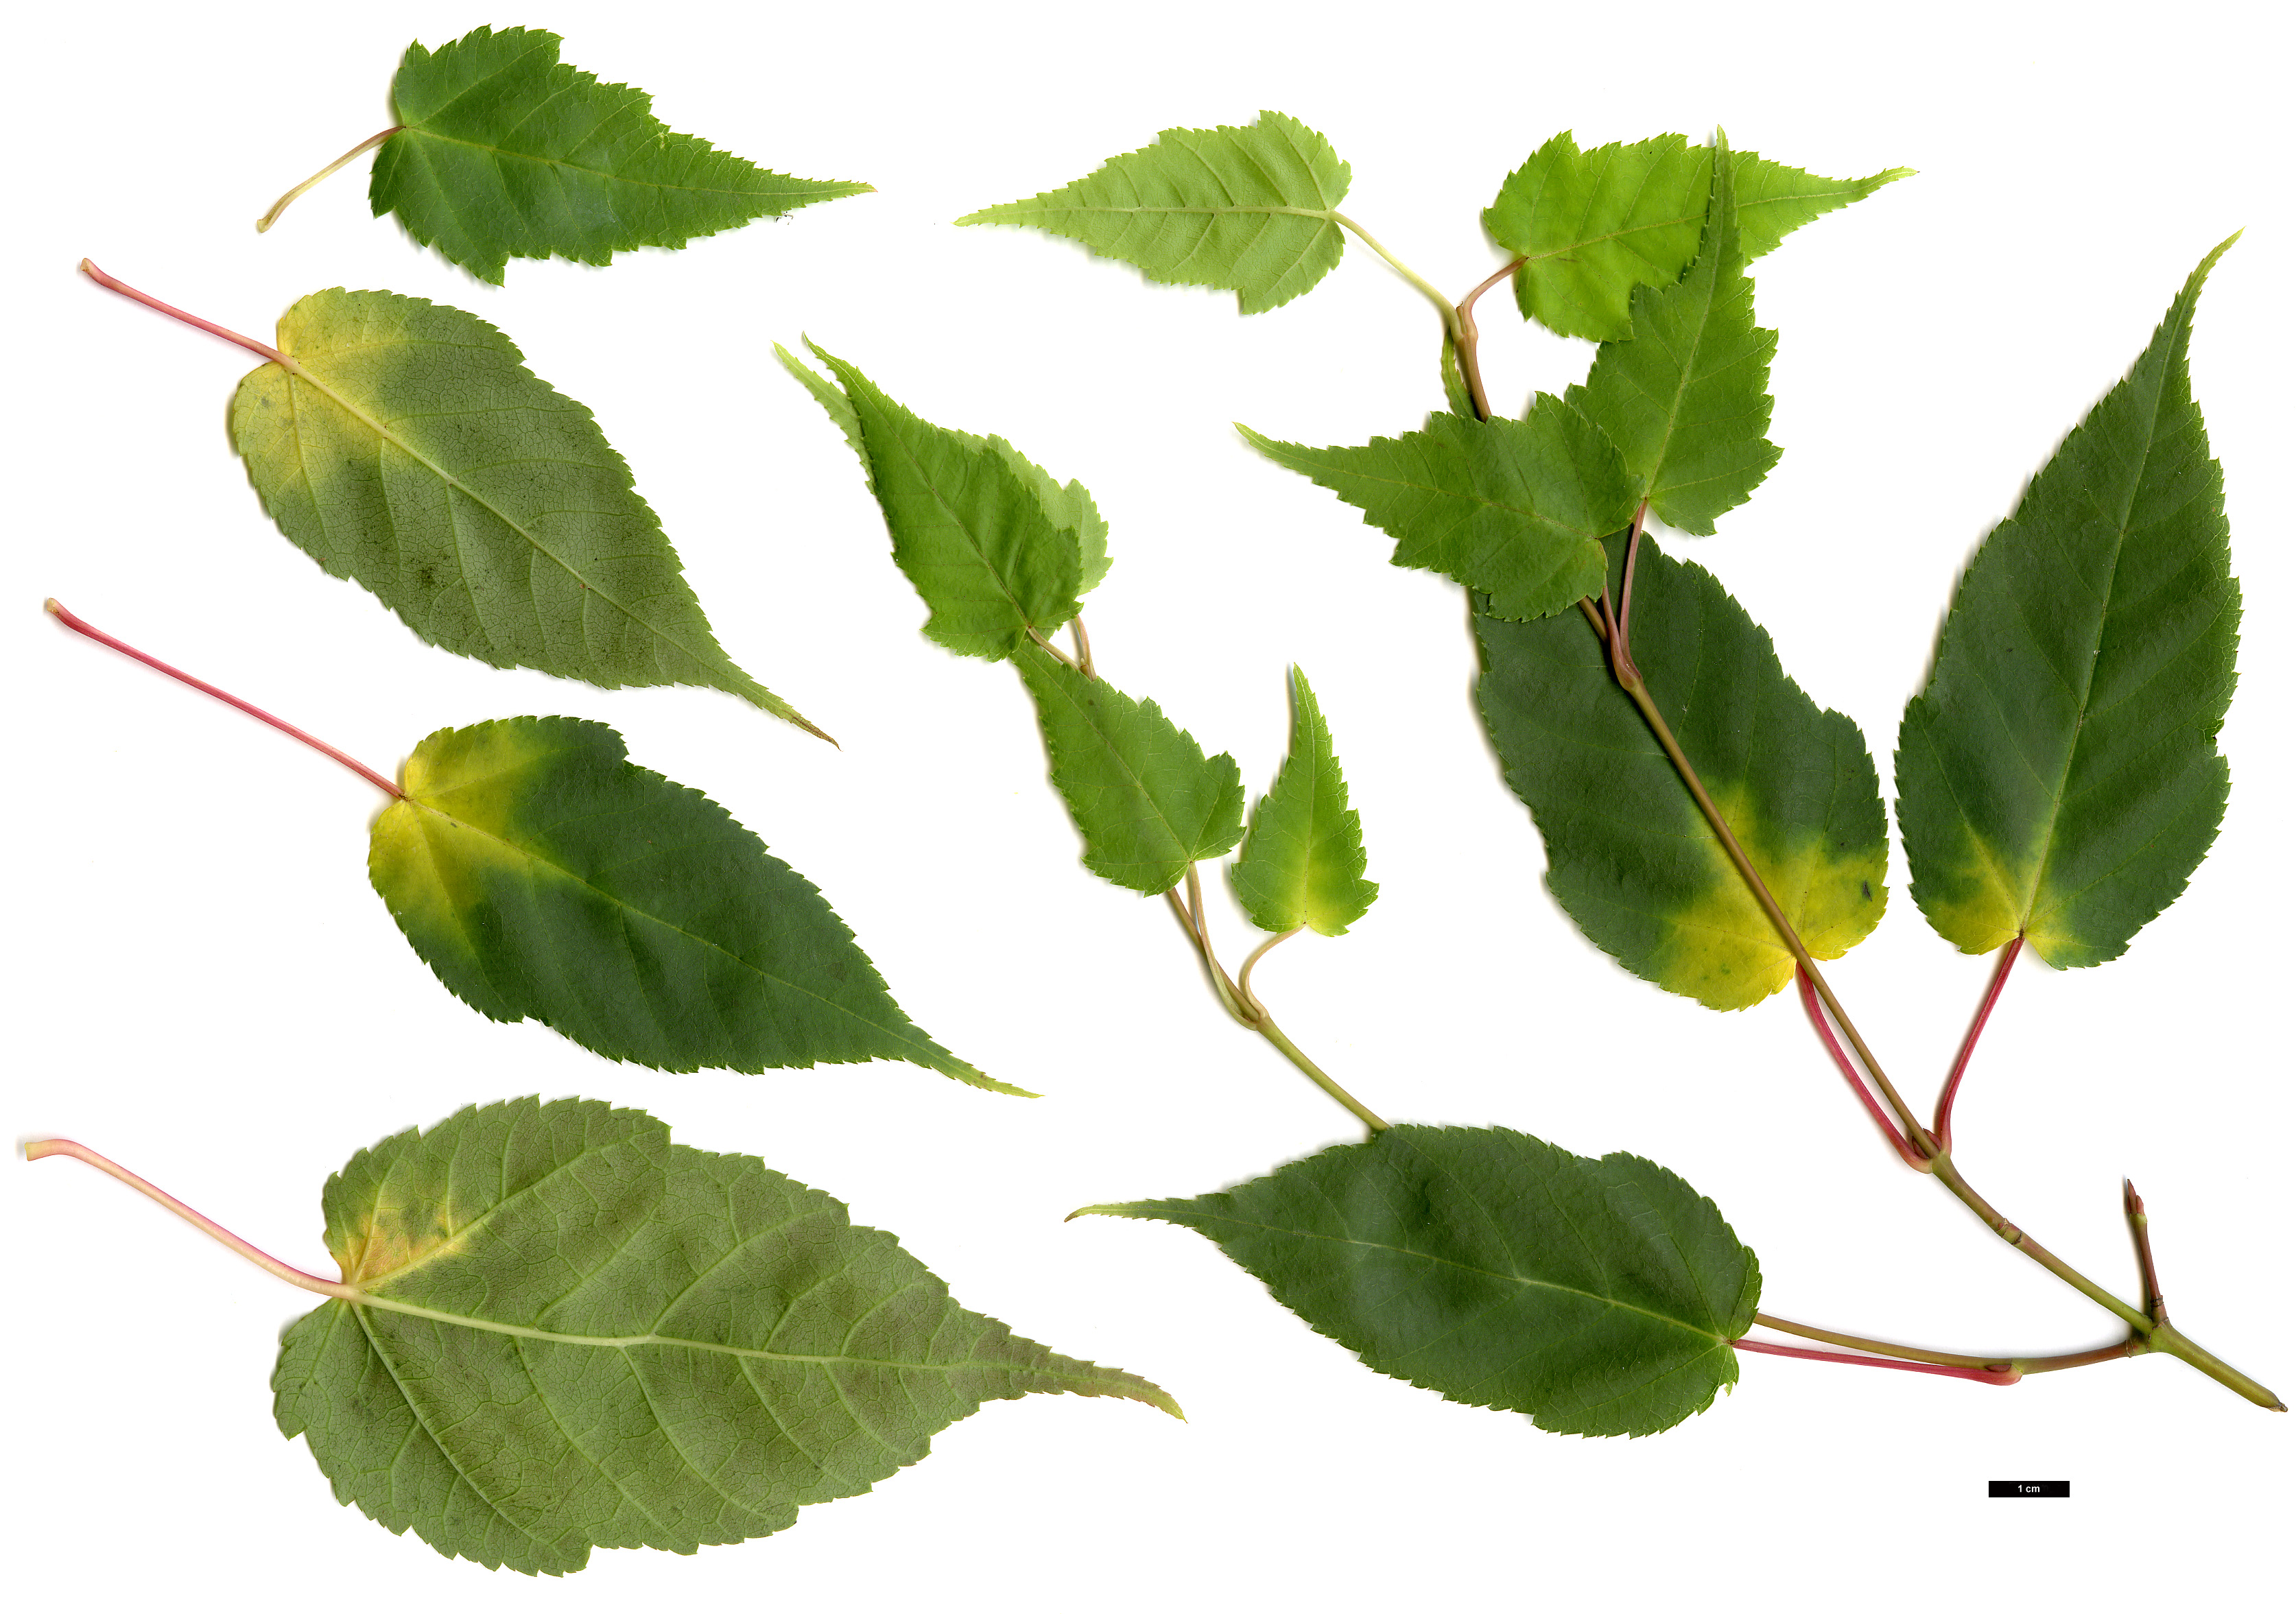 High resolution image: Family: Sapindaceae - Genus: Acer - Taxon: caudatifolium